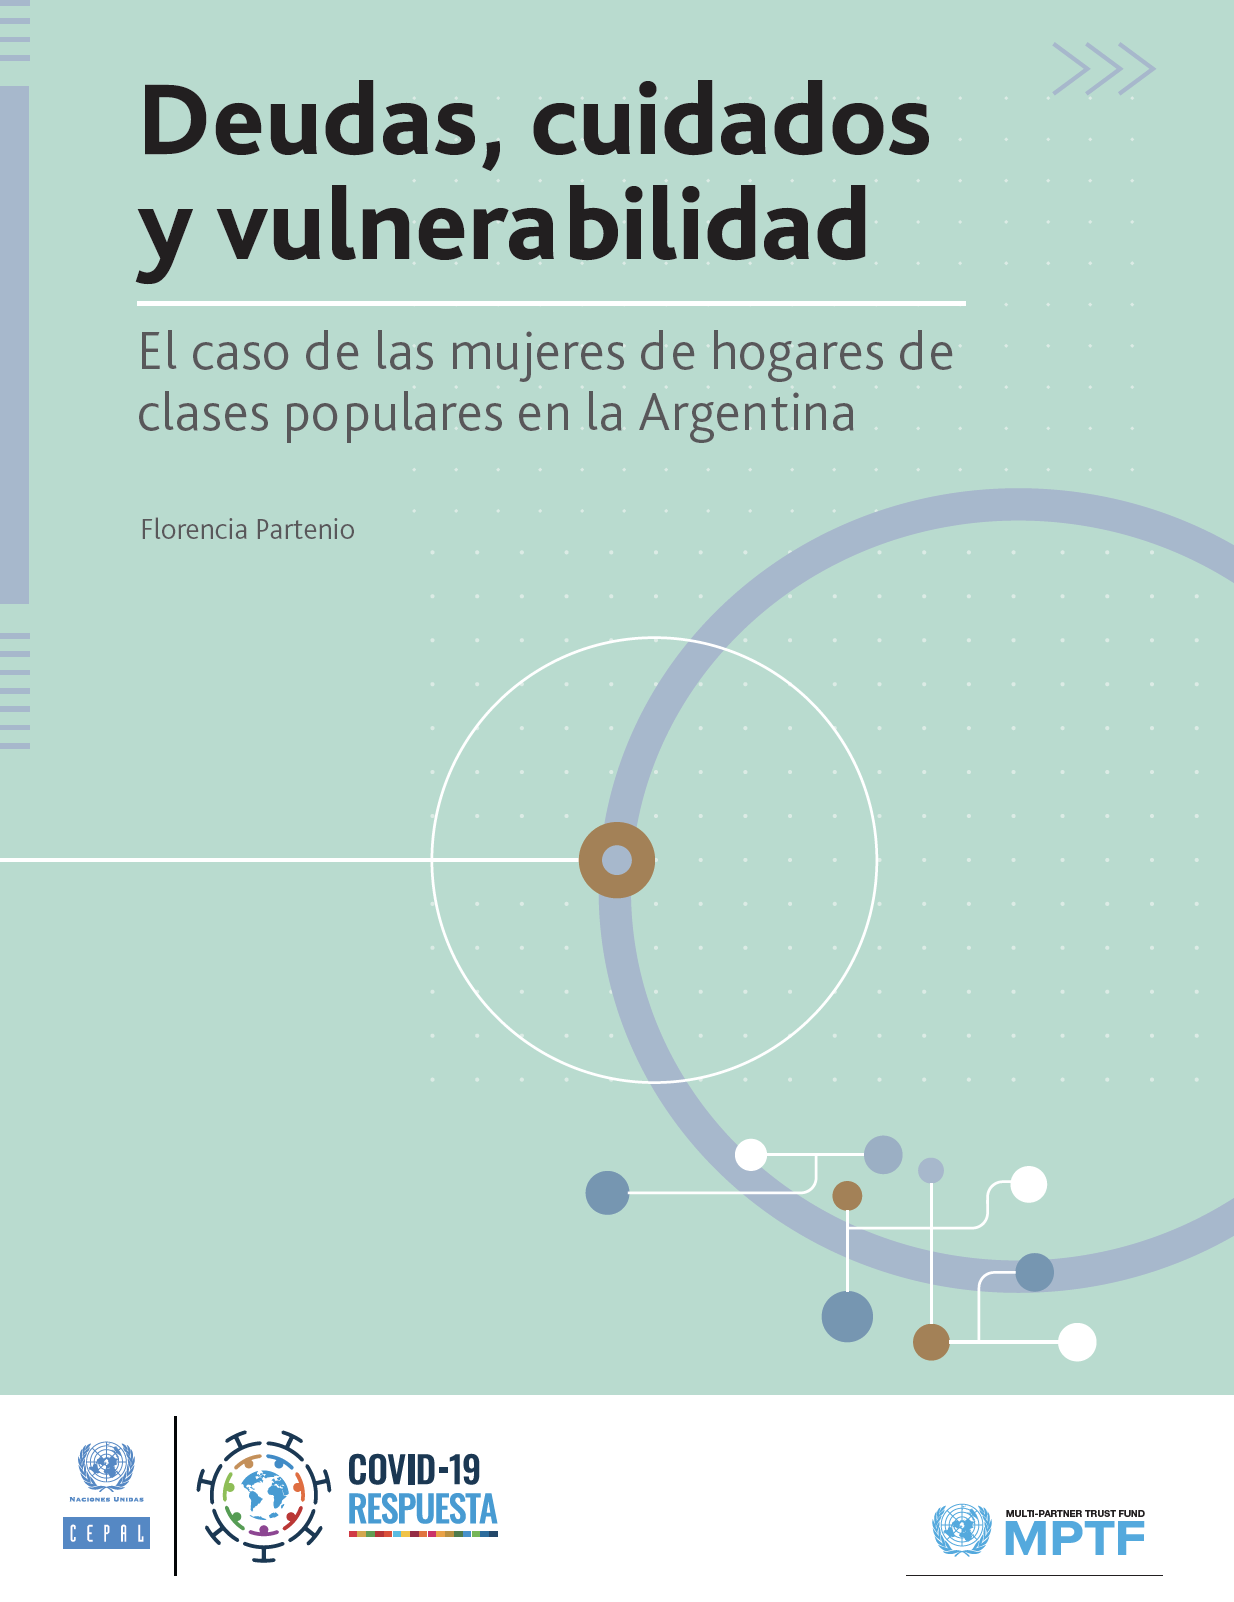 Deudas, cuidados y vulnerabilidad: el caso de las mujeres de hogares de clases populares en la Argentina